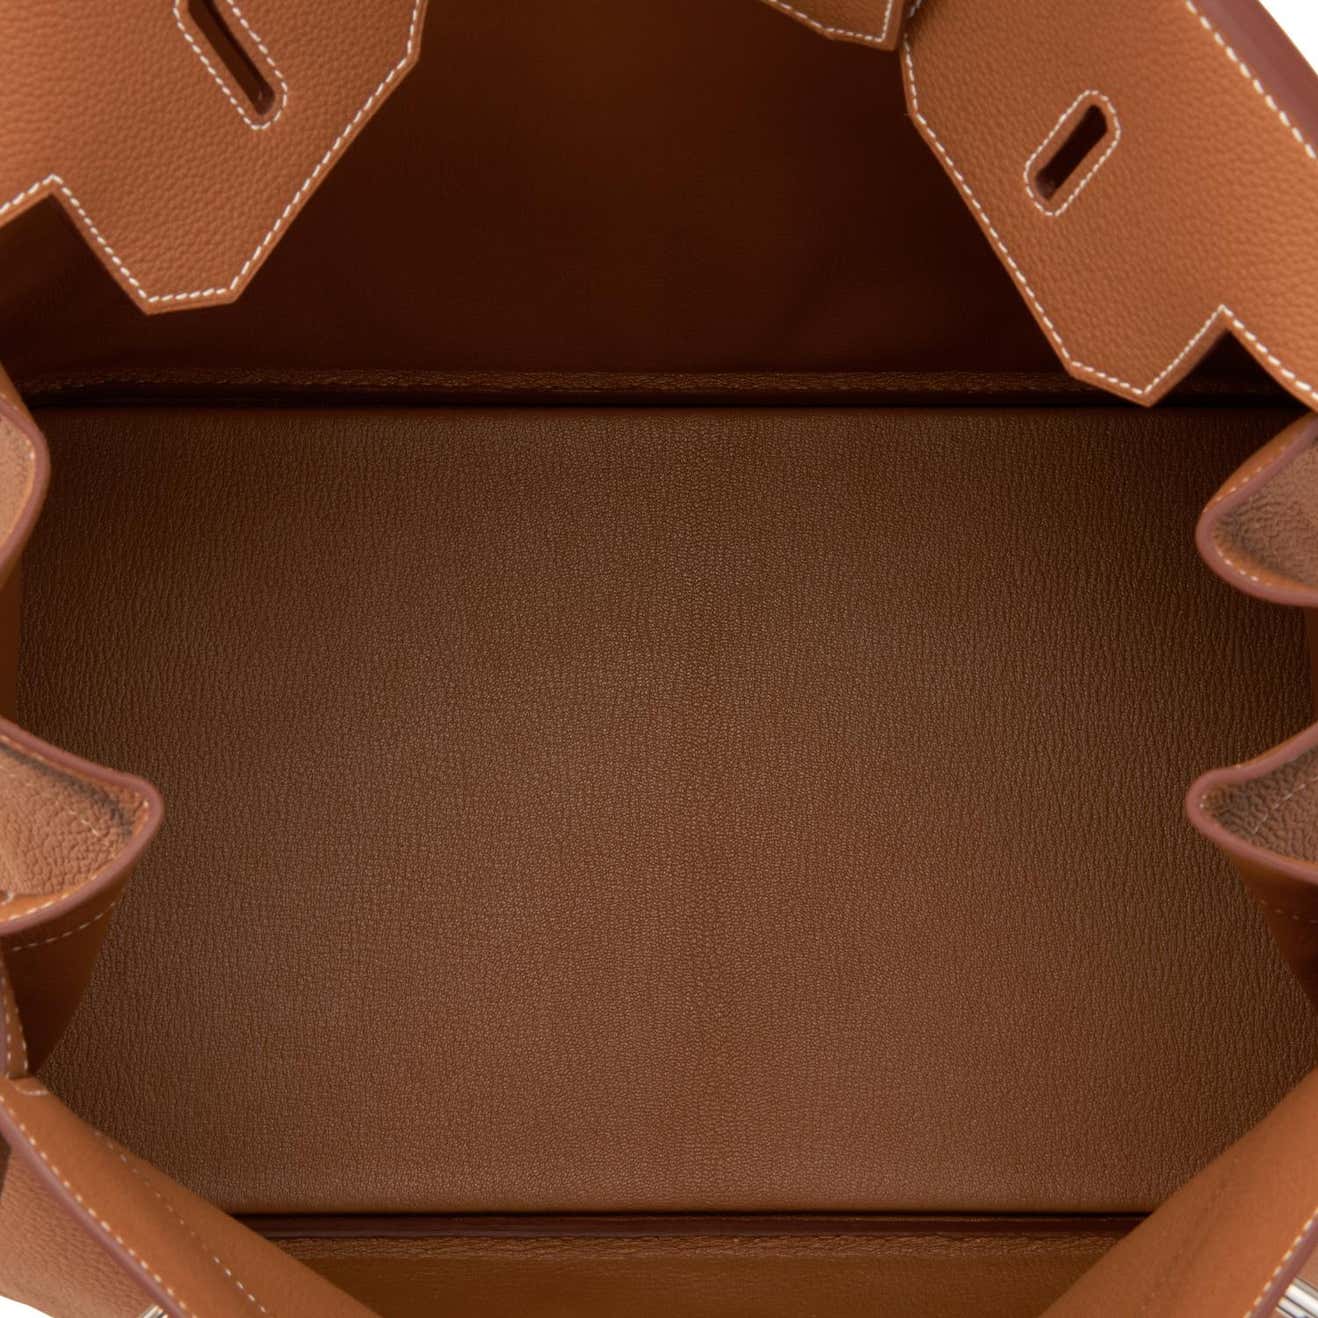 Hermes bag in Original Leather : Hermes Hac Birkin 40 Cm Gold Color Togo  Leather